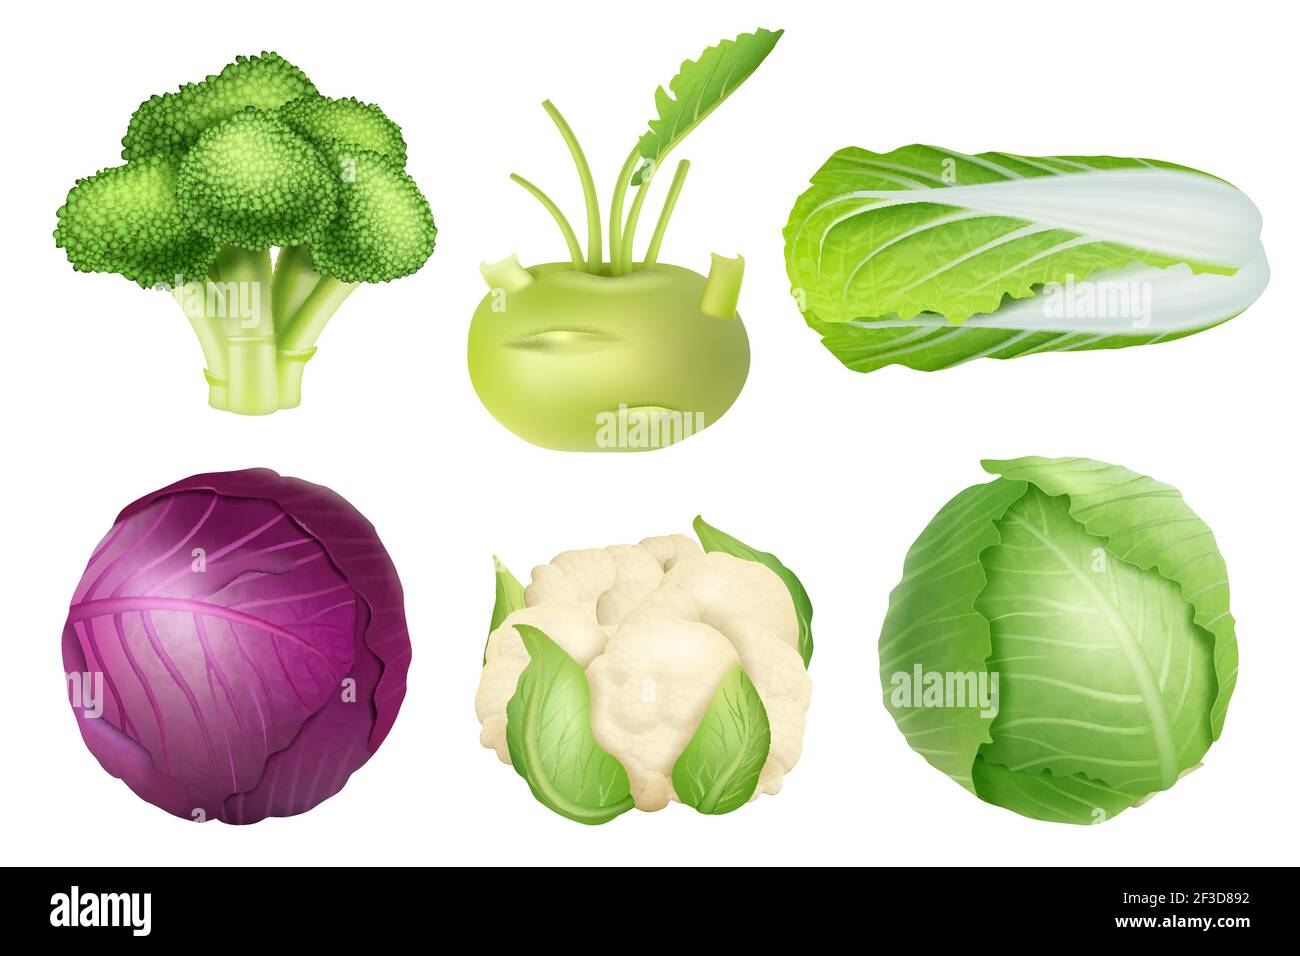 Kohl-Set. Grüne Ernährung landwirtschaftliche Objekte vegetarische Lebensmittel natürliche gesunde frische Produkte Vektor realistische Sammlung Bilder Stock Vektor